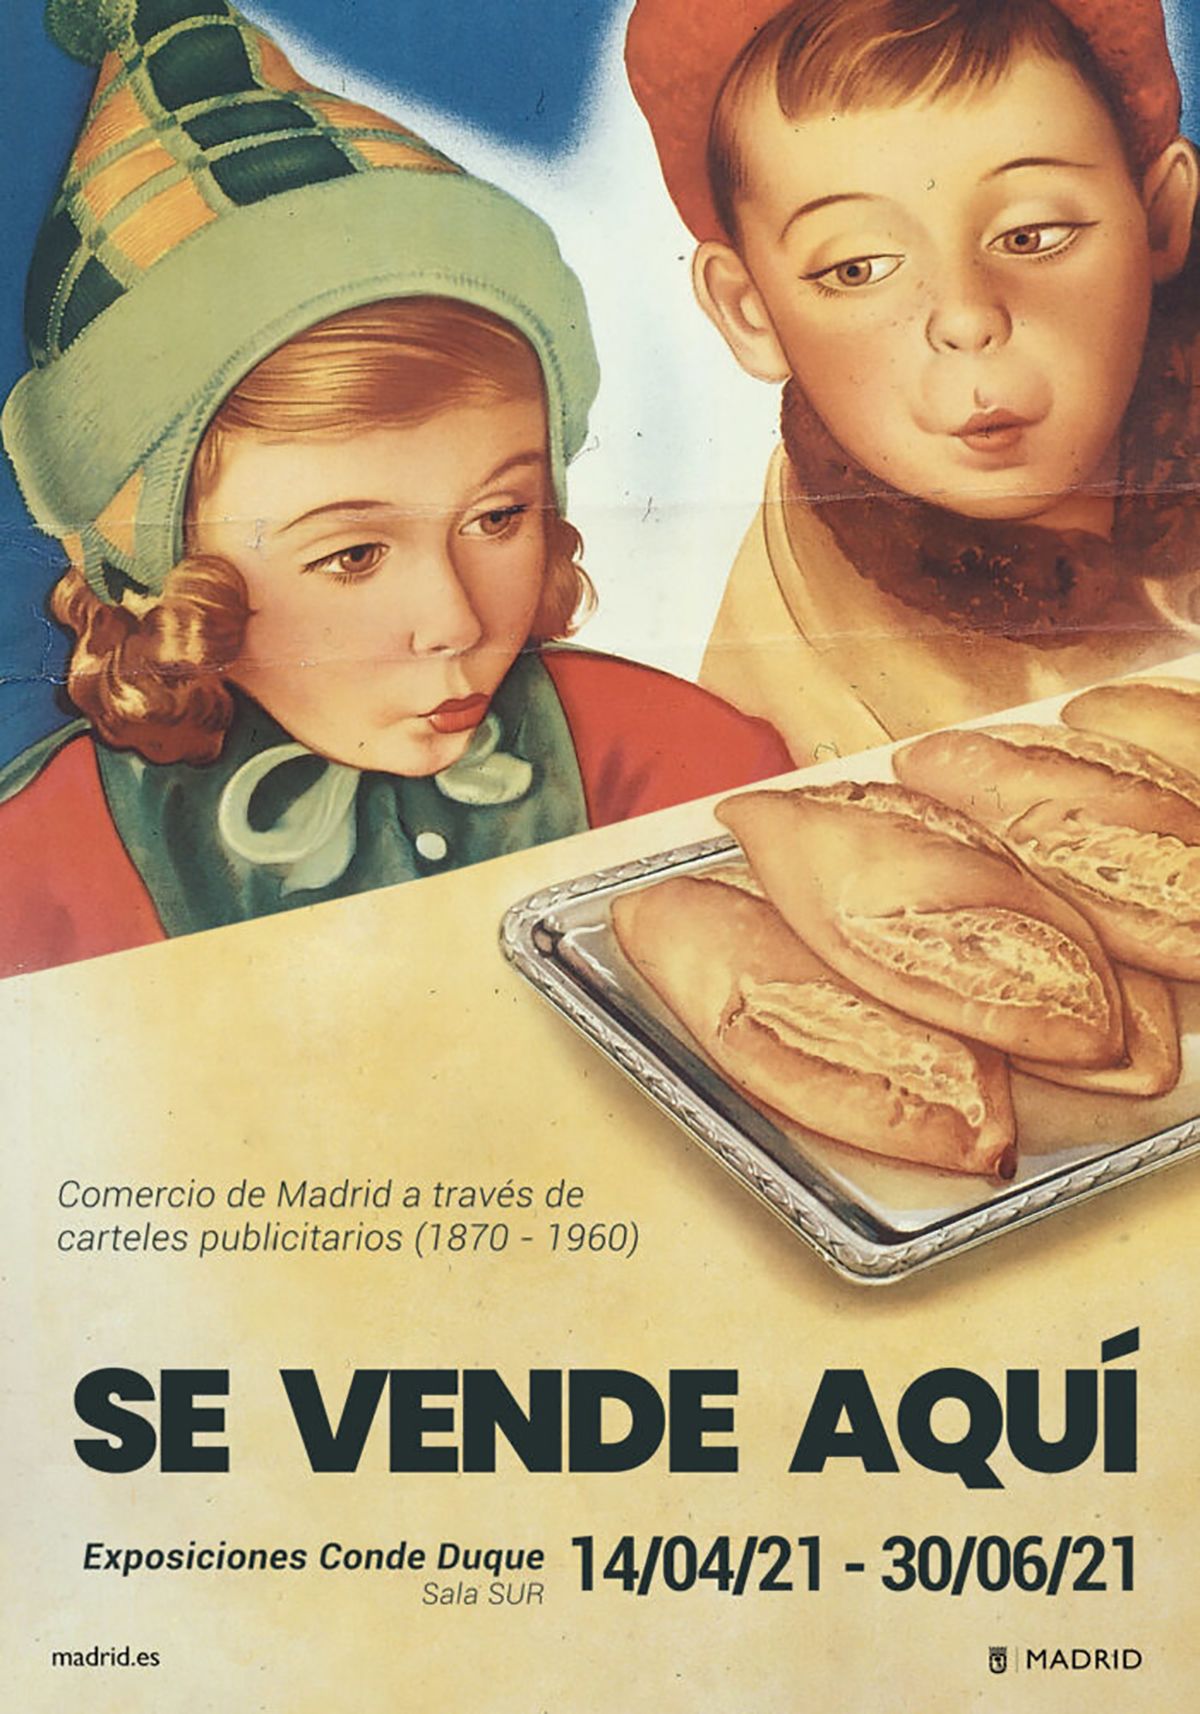 Conoce la historia del comercio de Madrid a través de carteles publicitarios